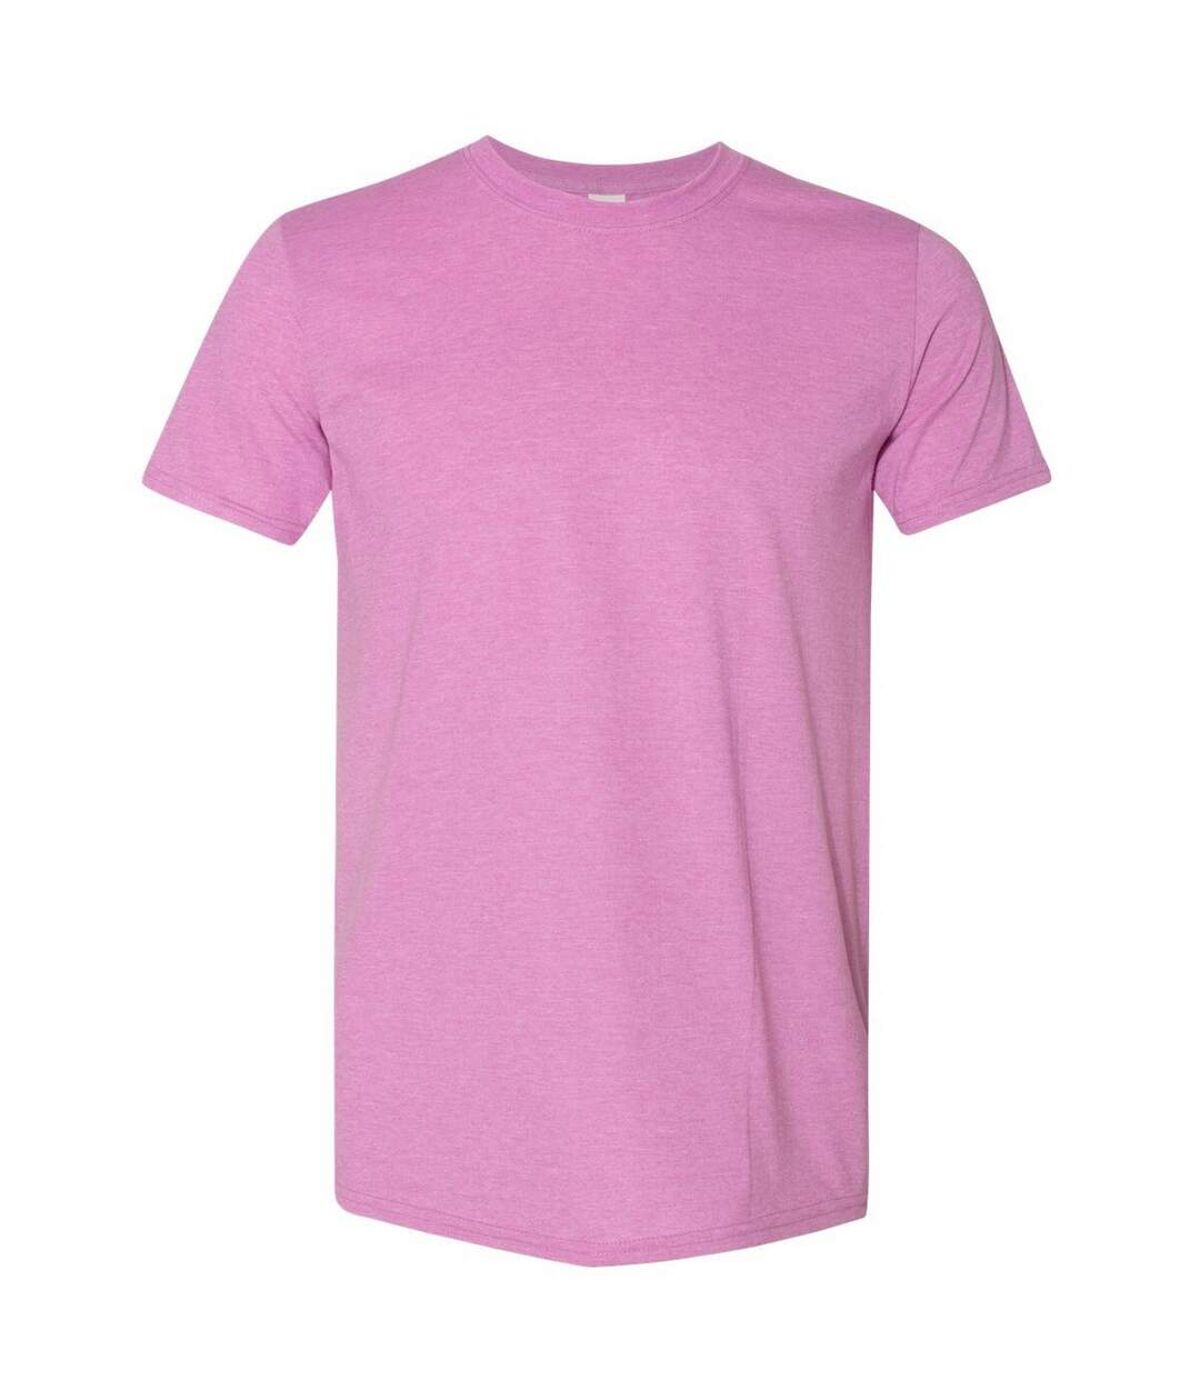 Gildan - T-shirt manches courtes - Homme (Violet clair chiné) - UTBC484